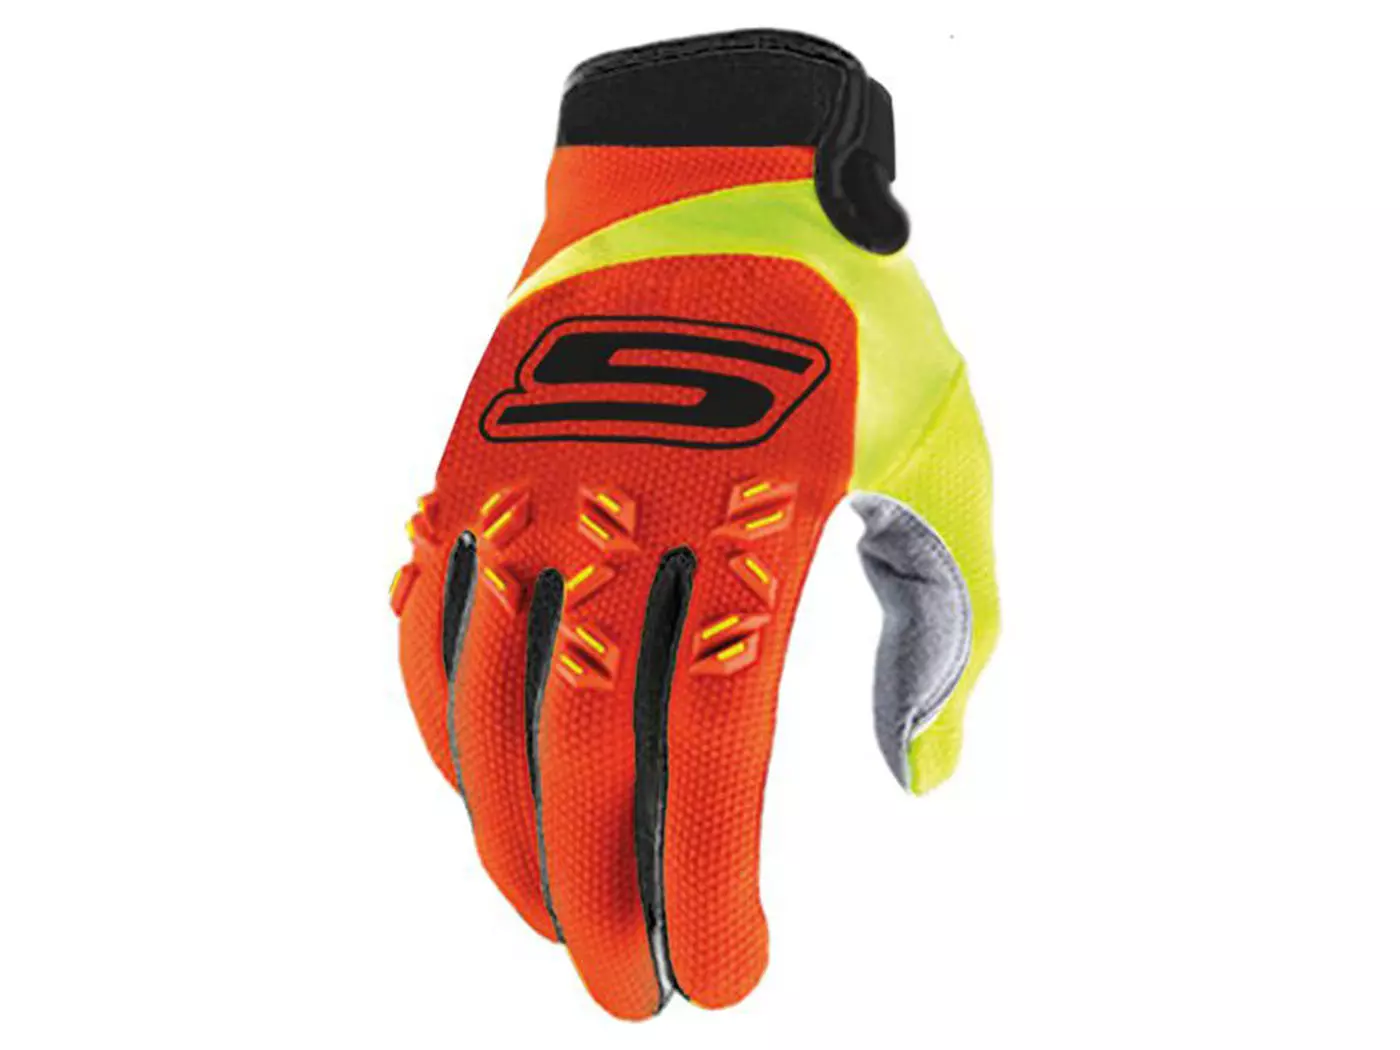 Handschoenen MX S-Line homologiert, orange / fluo-gelb - Maat S